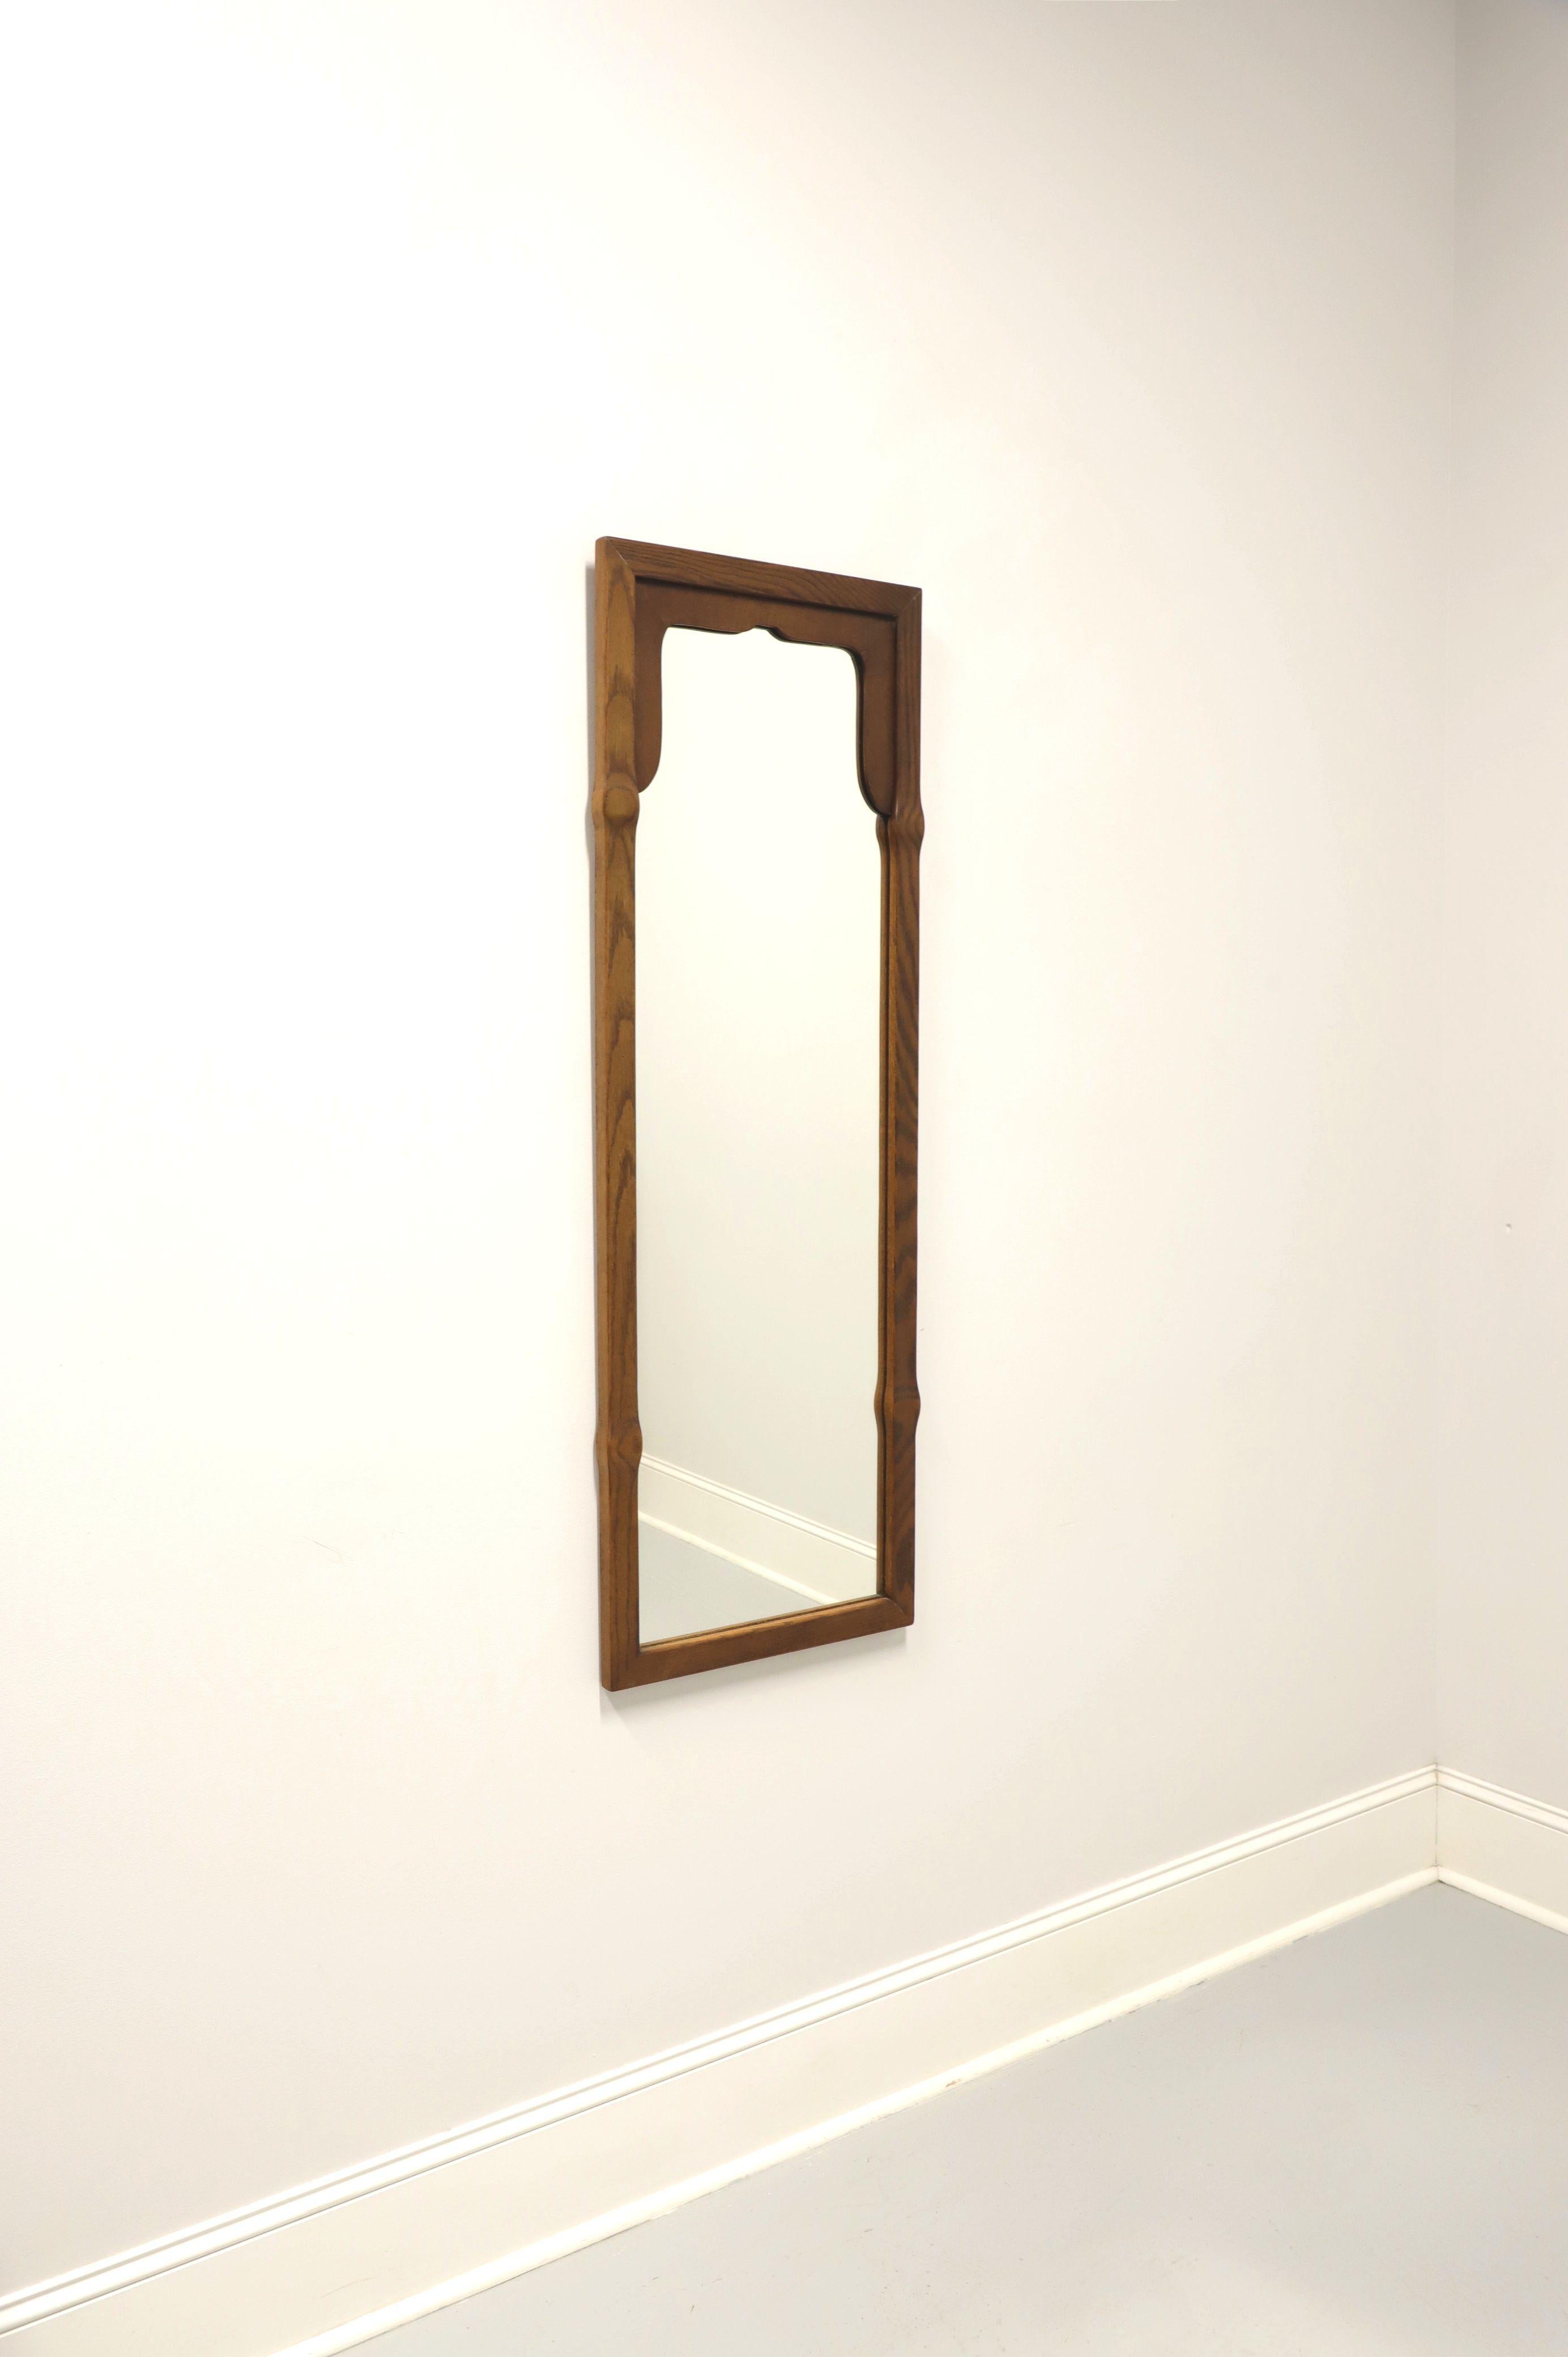 Ein Wandspiegel im Regency-Stil, ohne Marke, ähnliche Qualität wie Tomlinson. Verspiegeltes Glas in einem rechteckigen Rahmen aus Eichenholz mit leichten Rundungen an vier Stellen. Mit einem gewölbten Einsatz aus dunklem Nussbaumholz auf der